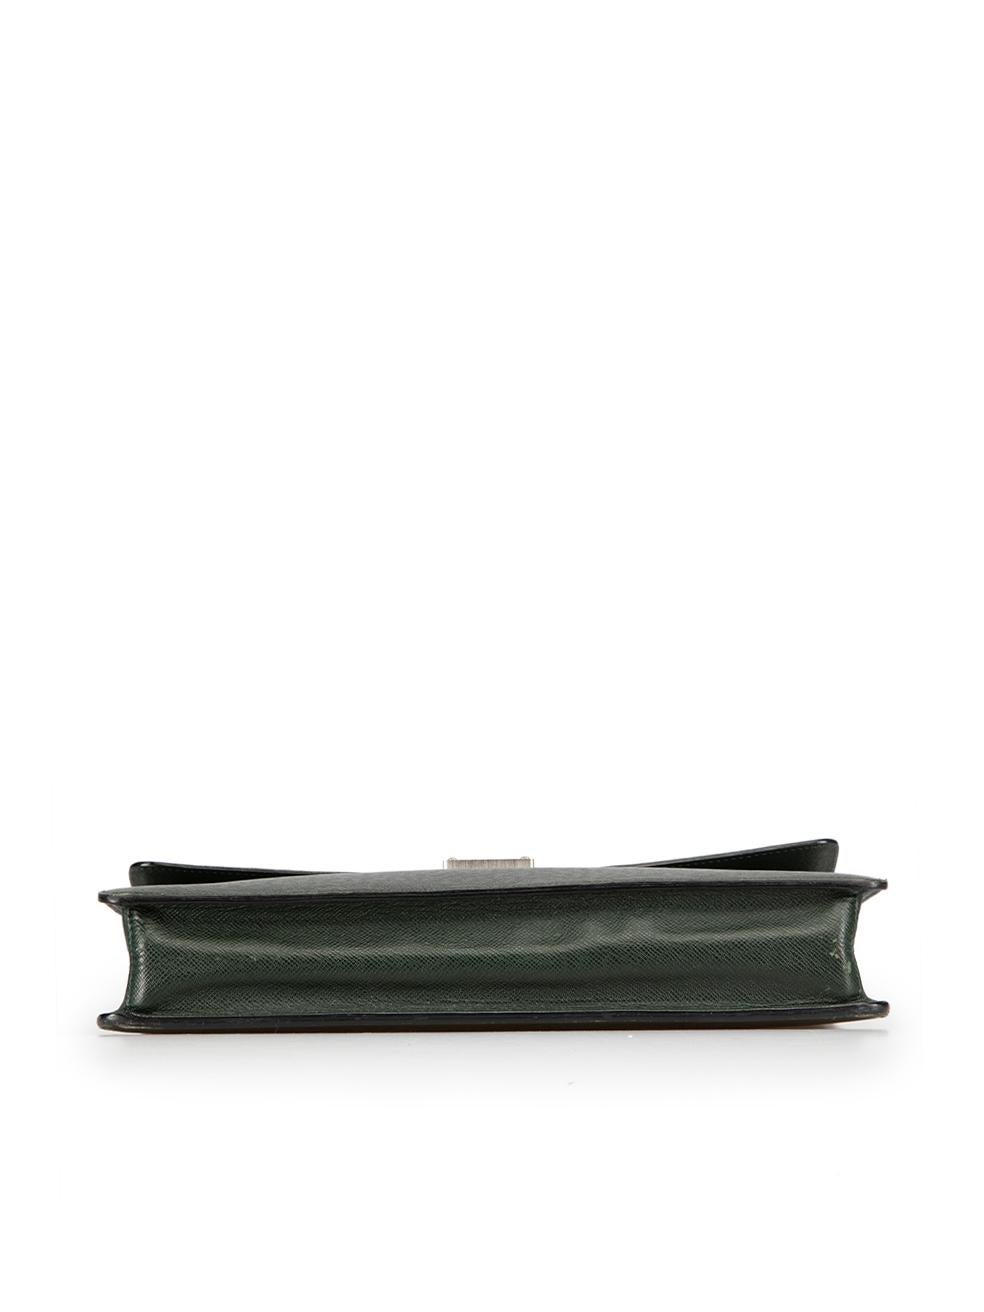 Louis Vuitton Women's Green Leather Epicea Taiga Robusto 1 Briefcase 1